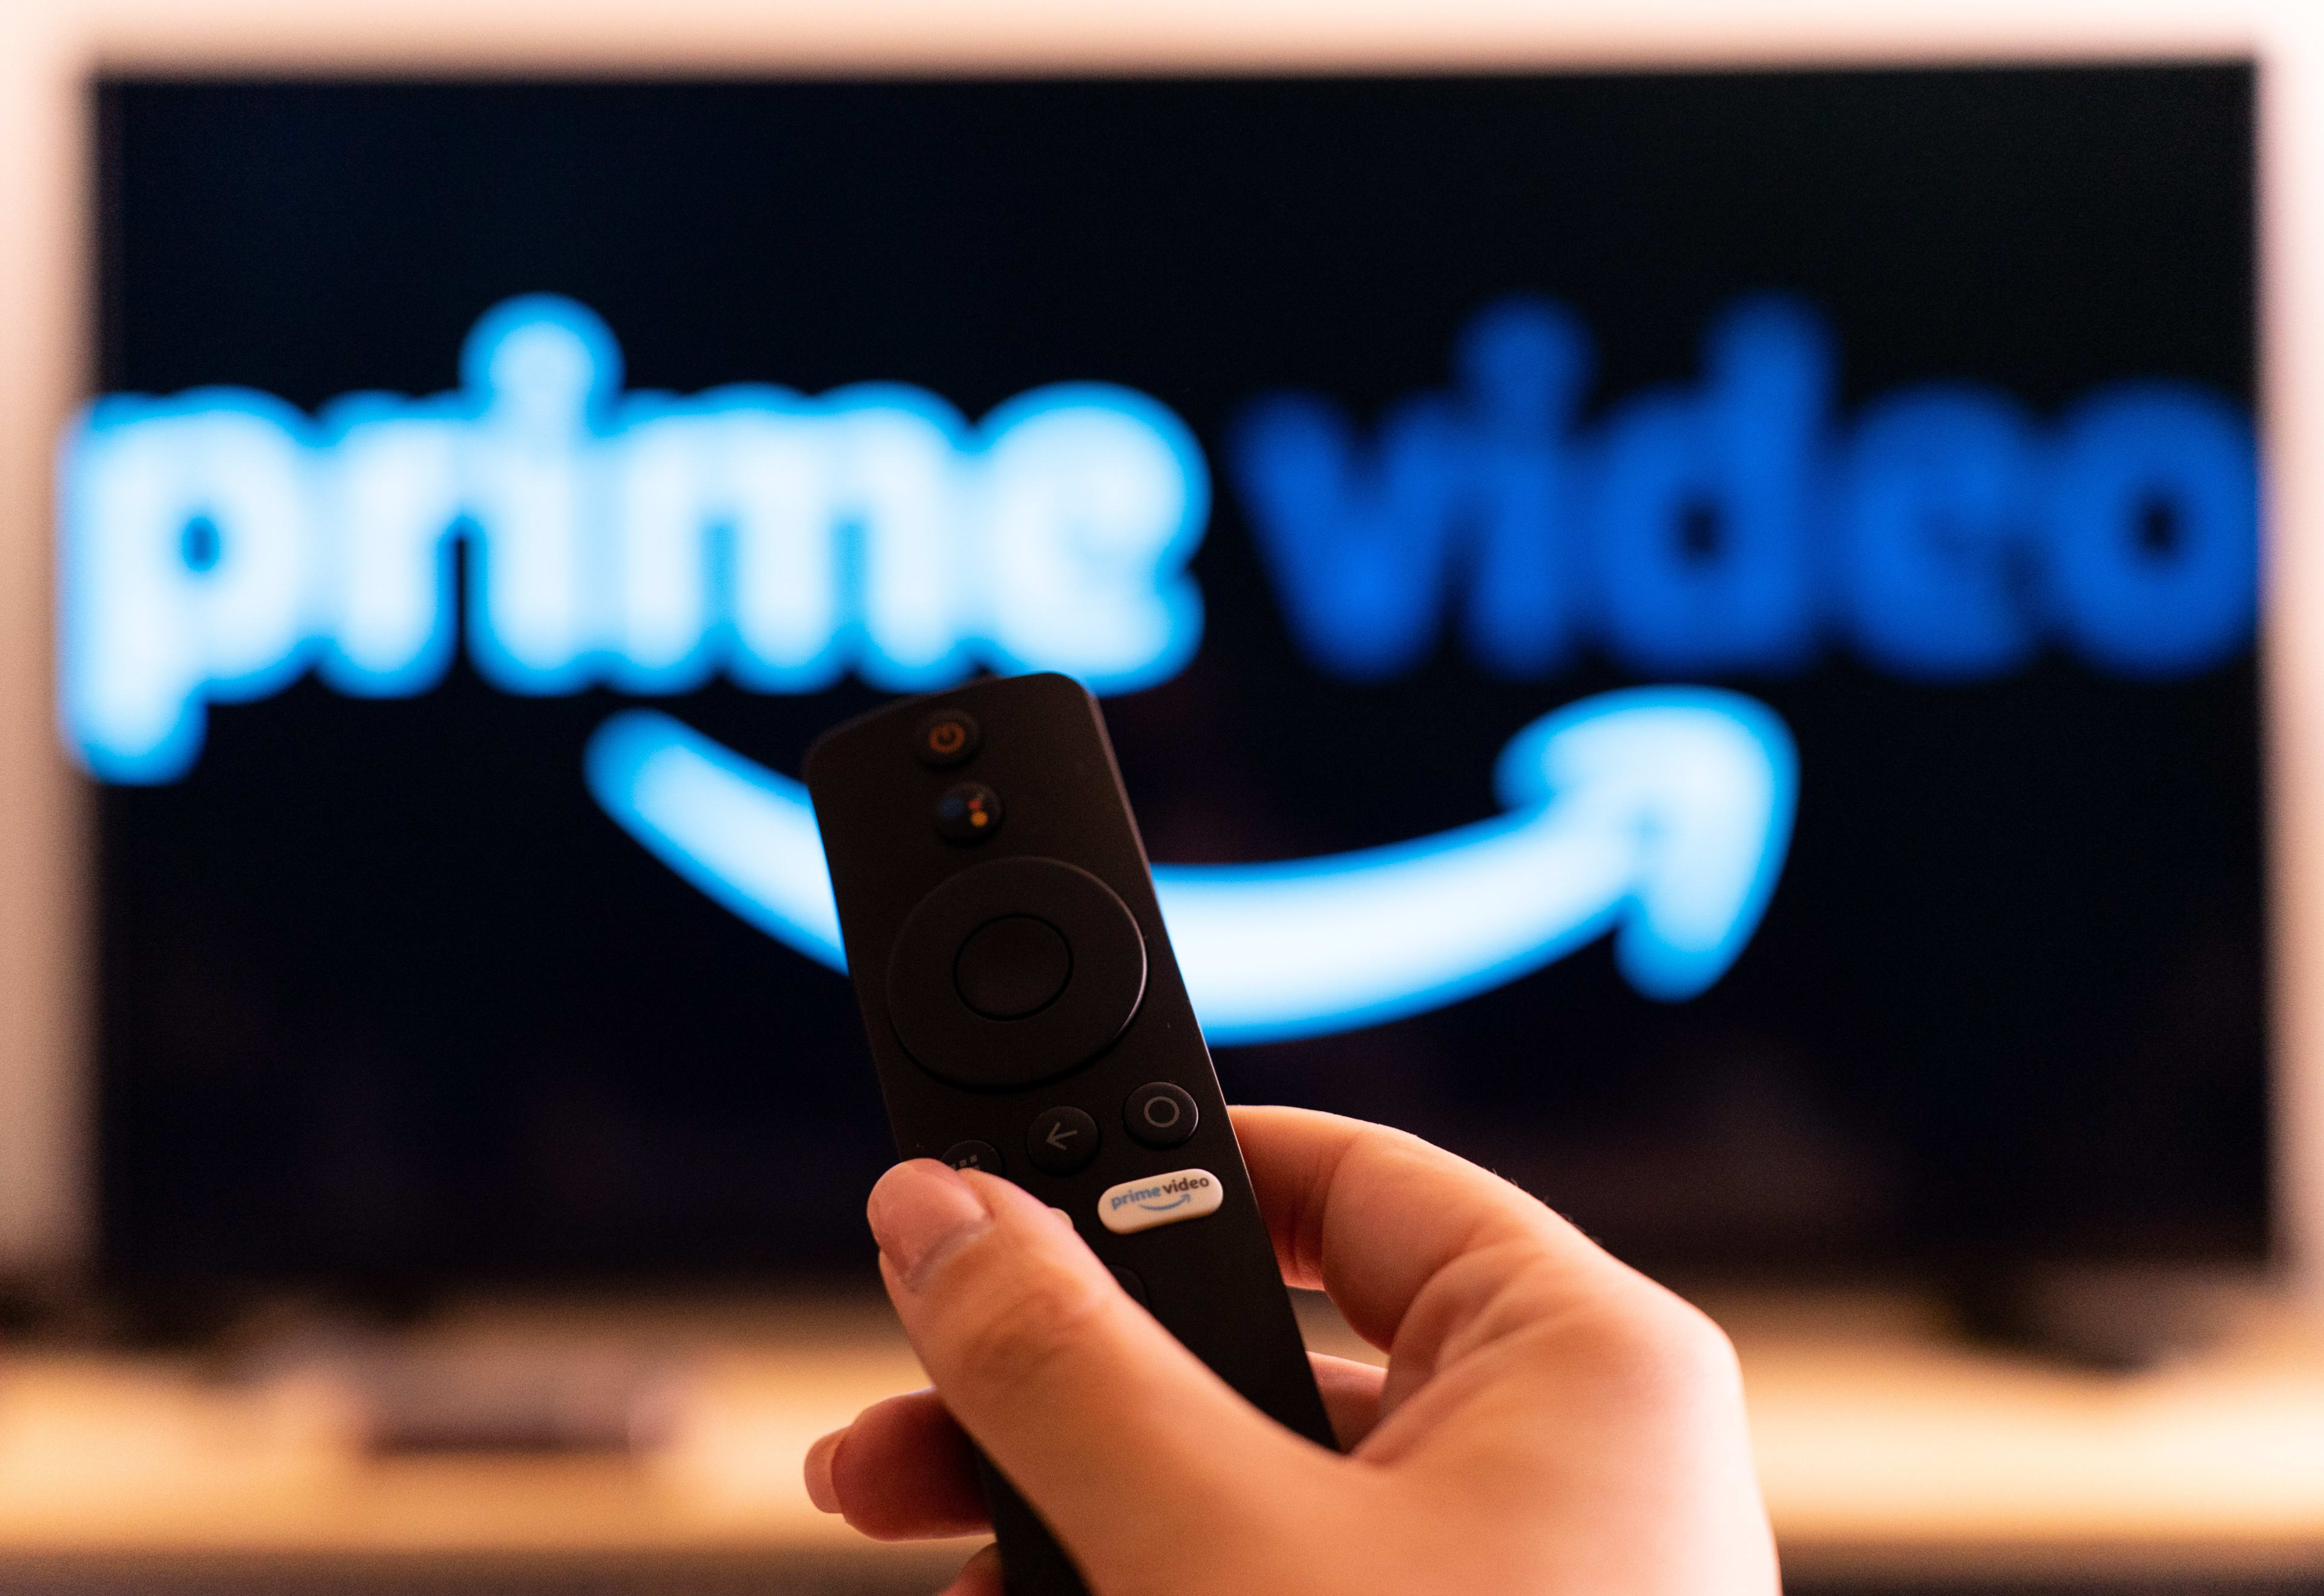 Ook Amazon verhoogt prijzen: flinke prijsstijging voor Prime-abonnement